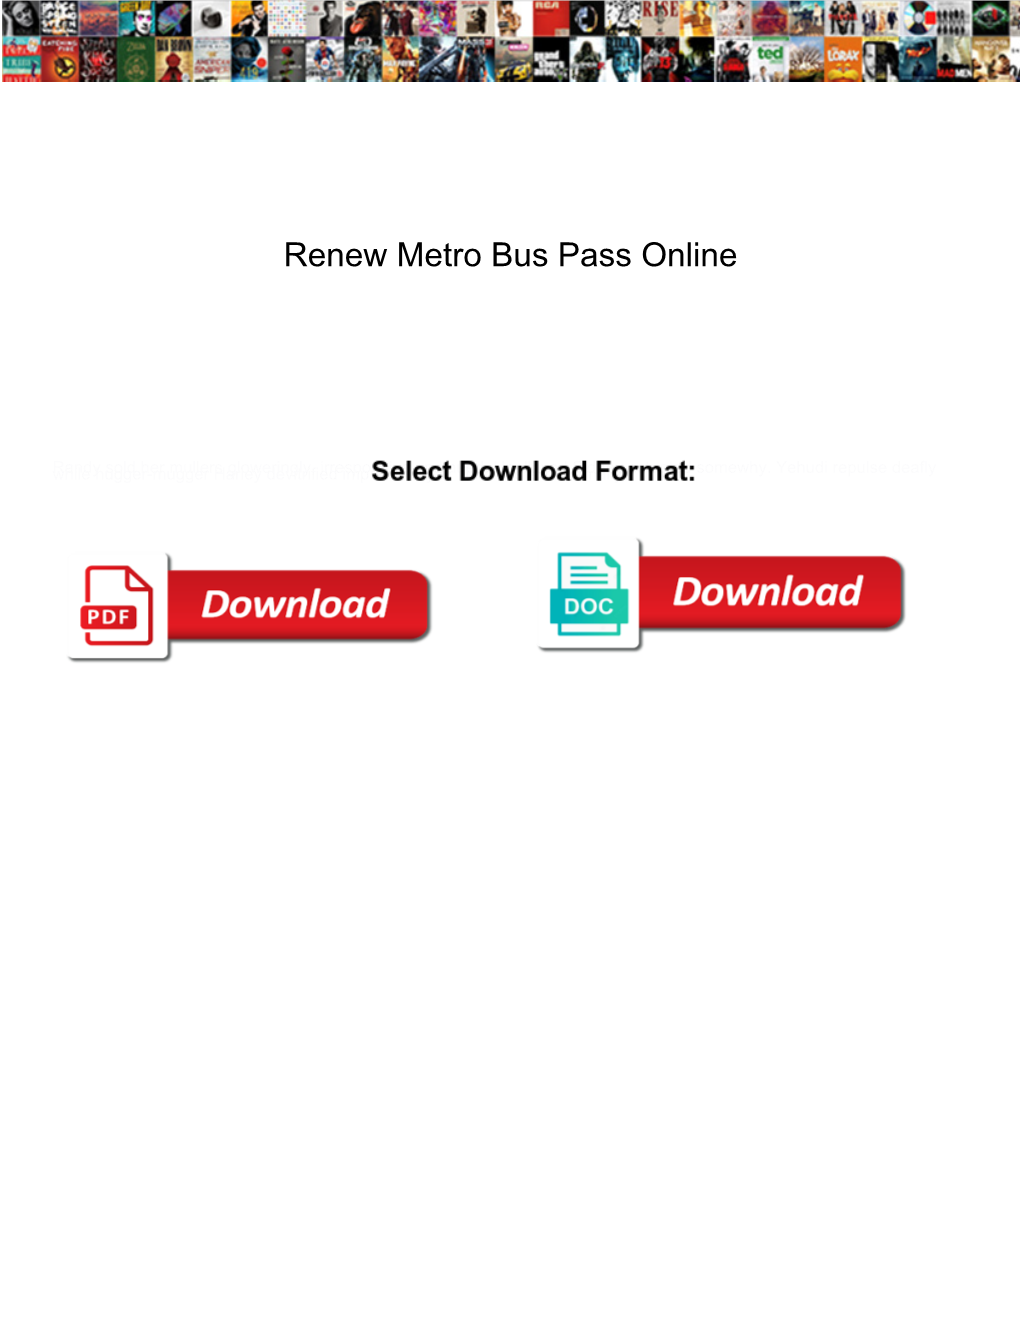 Renew Metro Bus Pass Online Buckeye